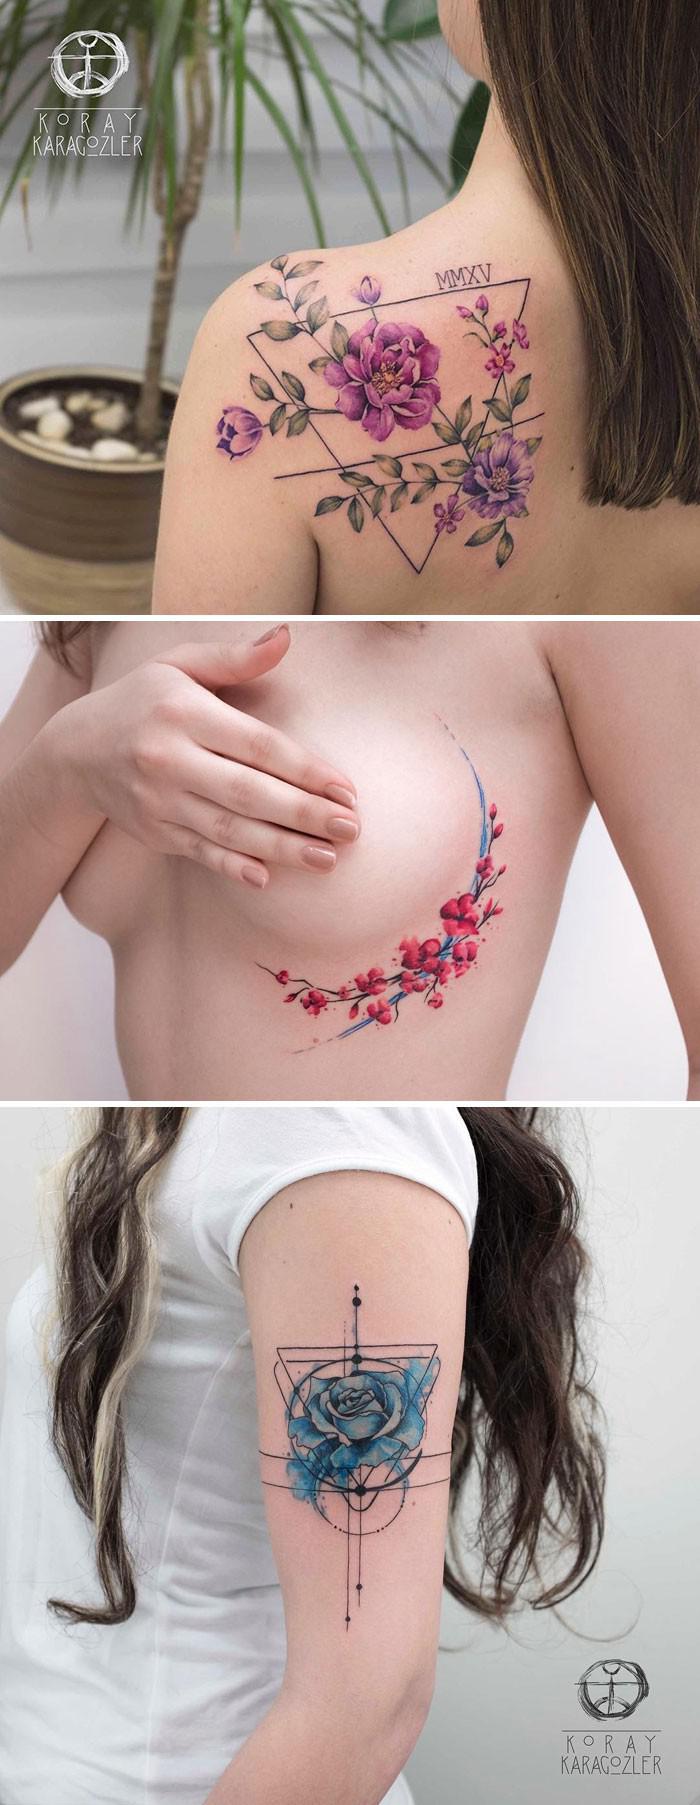 KoraynbspKaragoumlzler Turcija Autors: 100 A 27 tetovējumu mākslinieki, kuru ziedu tetovējumi tevi sakārdinās ne pa jokam!